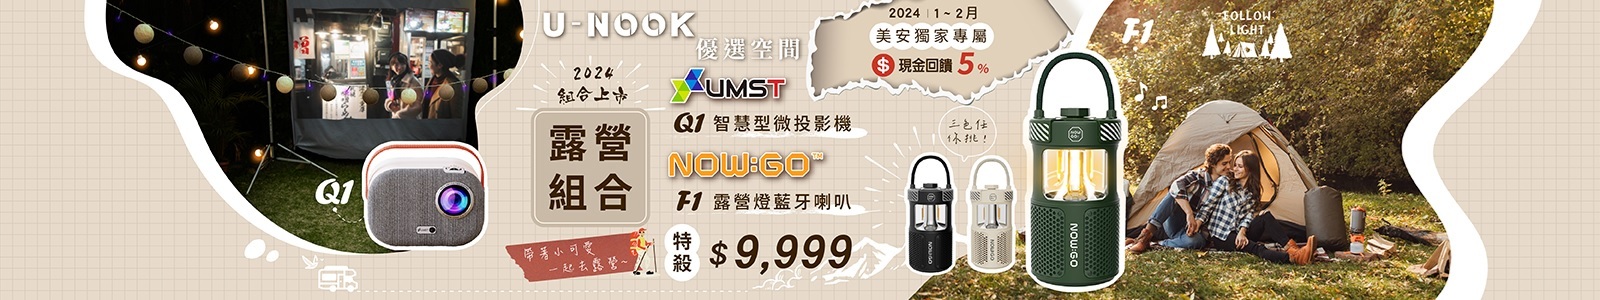 U-NOOK優選空間，現金回饋5%，超值露營組合，特殺$9,999。無論是與摯友共度美好時光，在大自然中享受極致的休閒娛樂。讓您的露營之旅更加豐富 